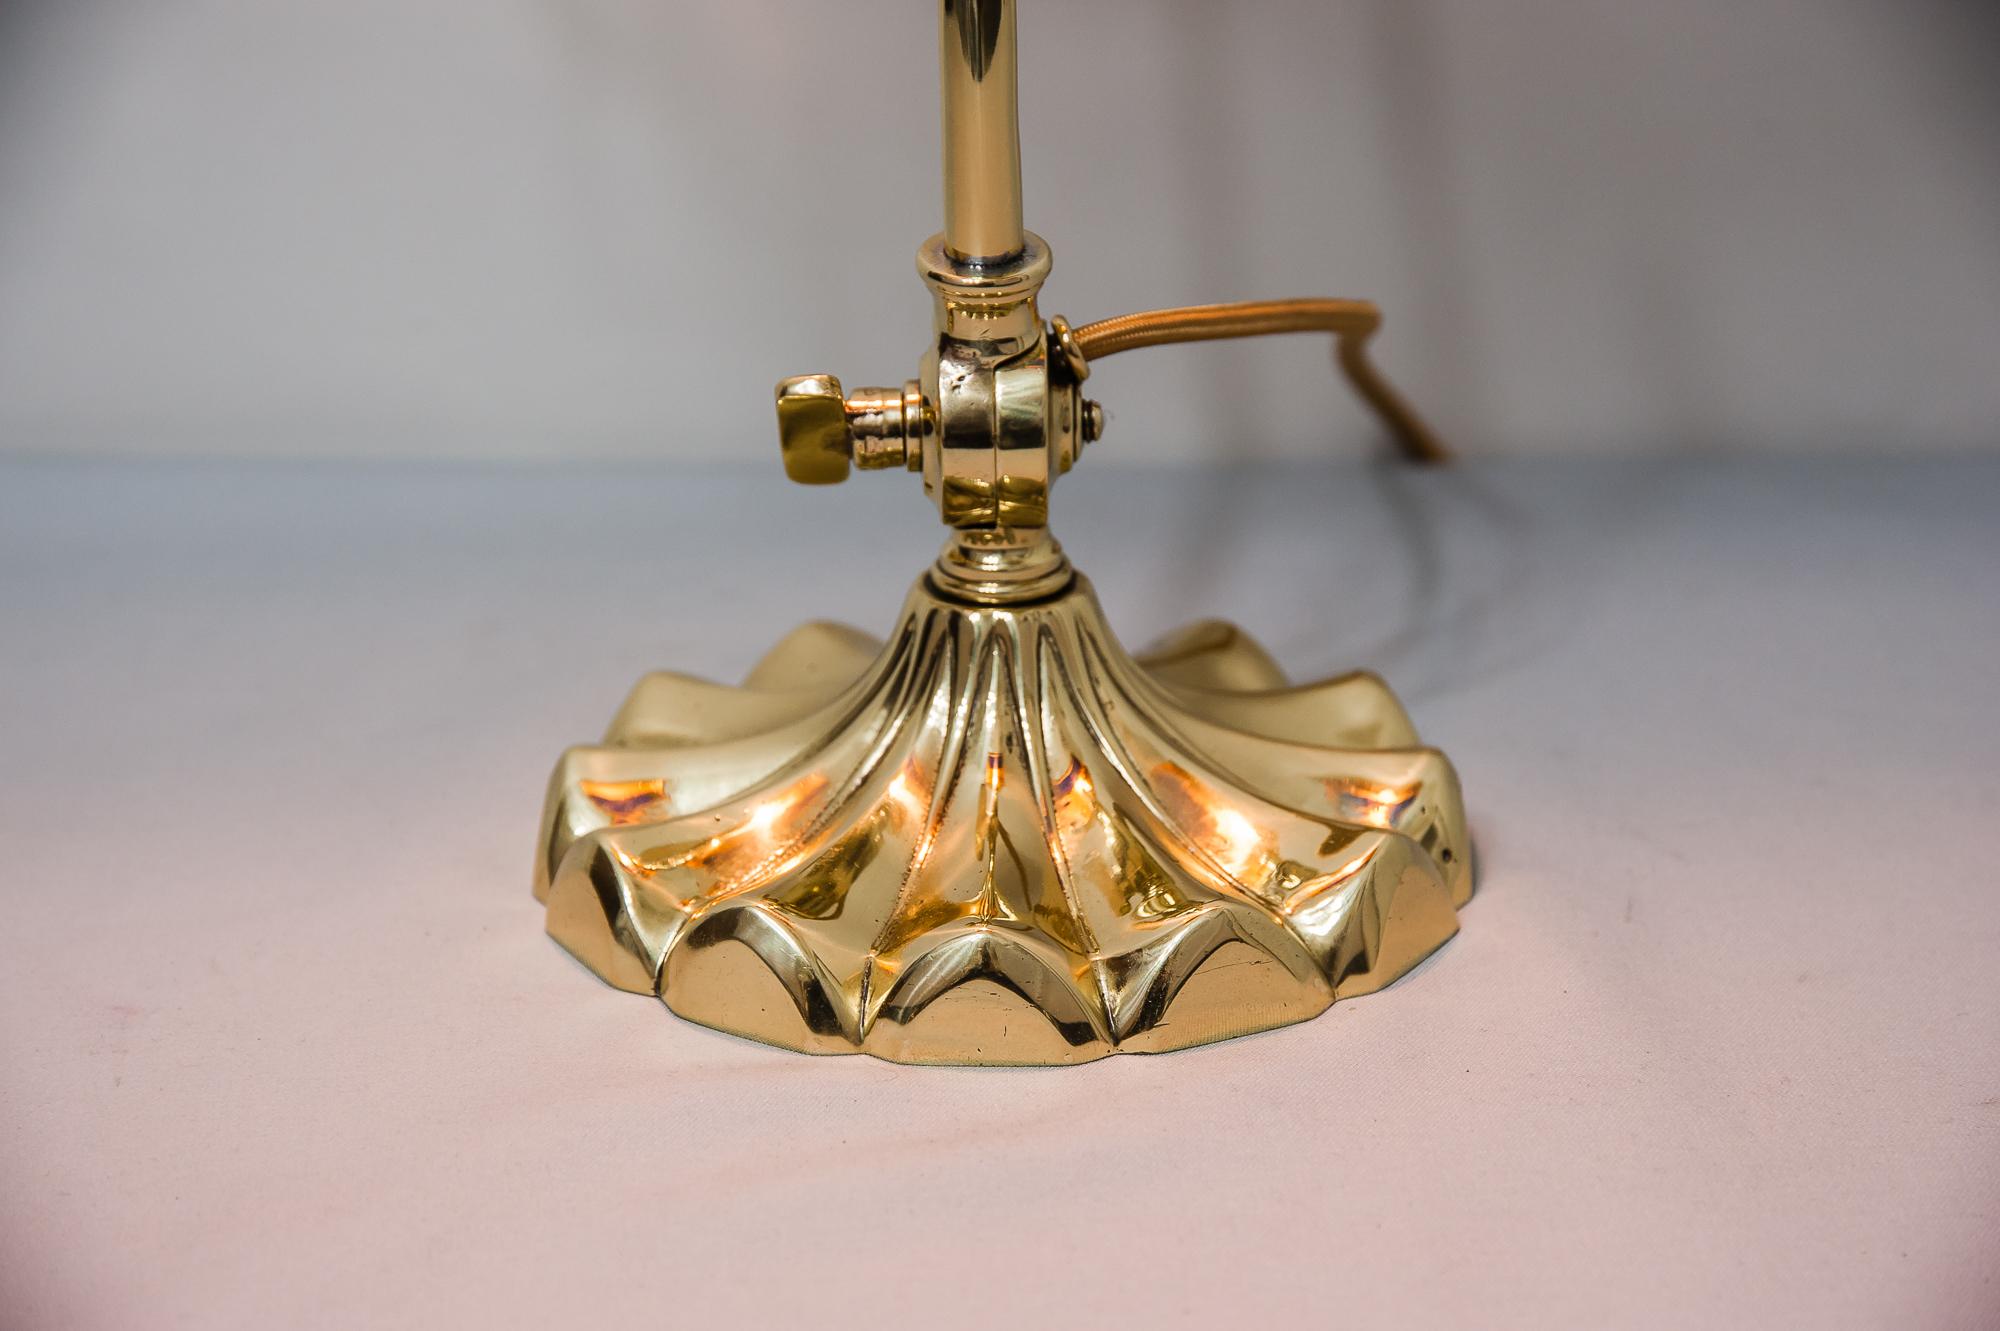 Jugendstil Table Lamp circa 1909 with Original Lötz Glass 6